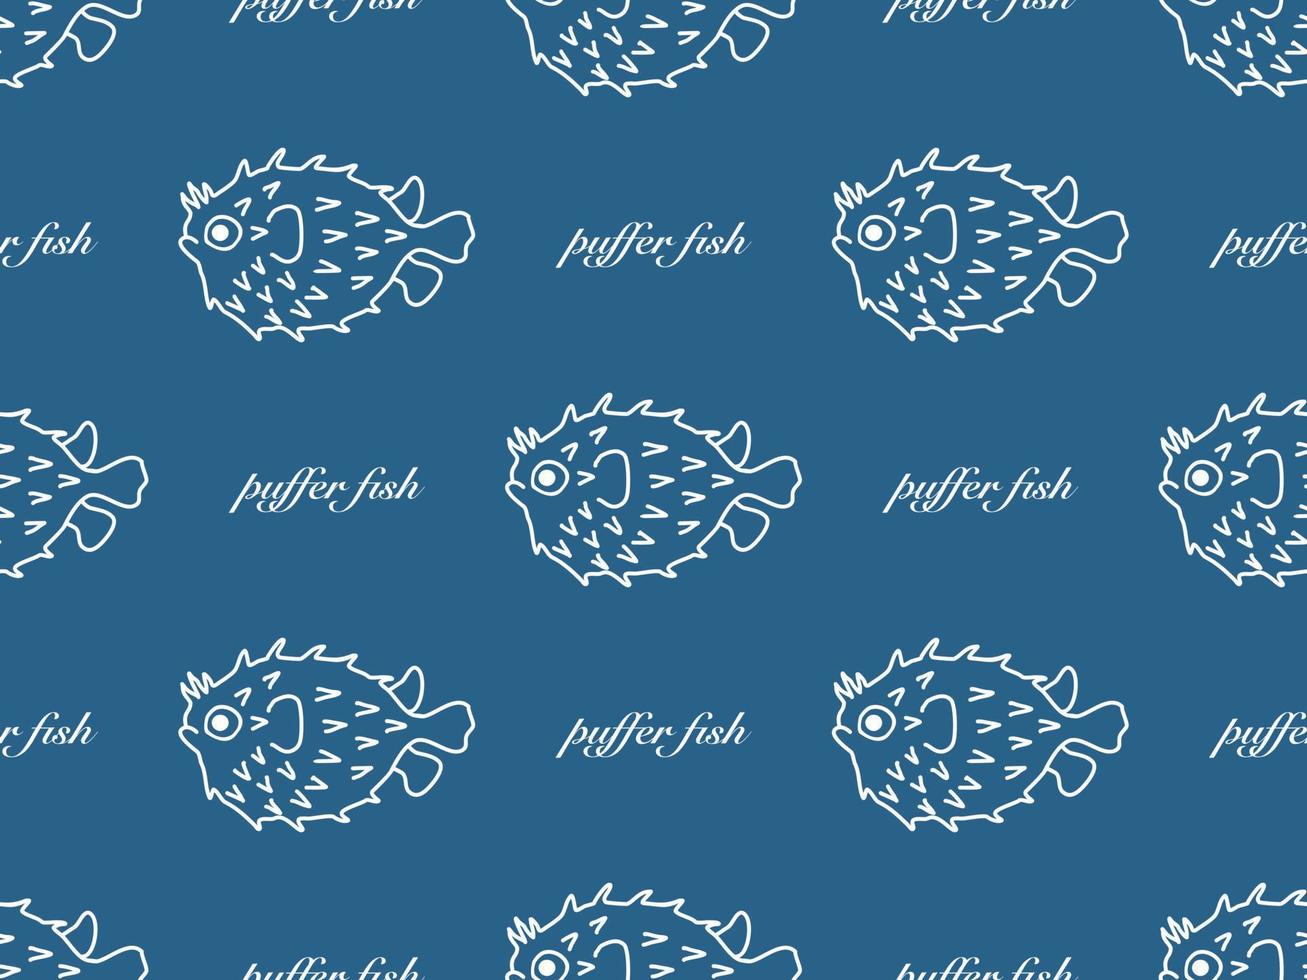 Kugelfisch Zeichentrickfigur nahtloses Muster auf blauem Hintergrund vektor